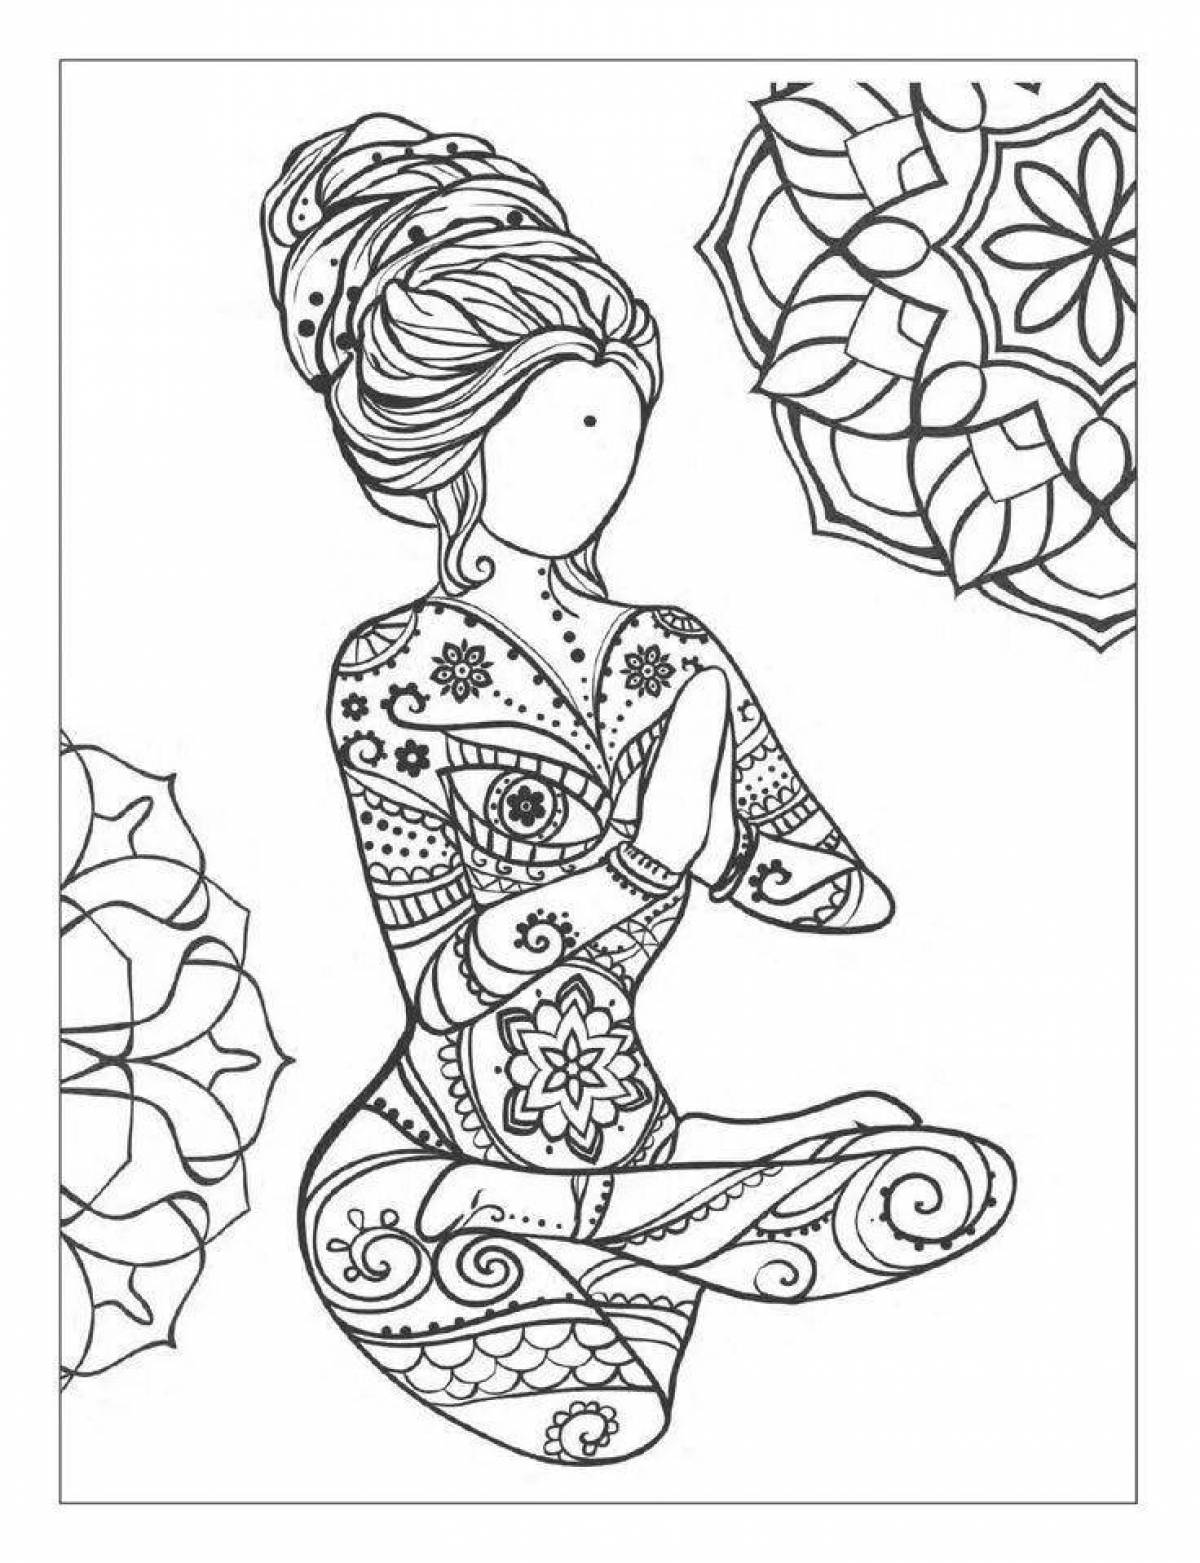 Joyful yoga coloring page